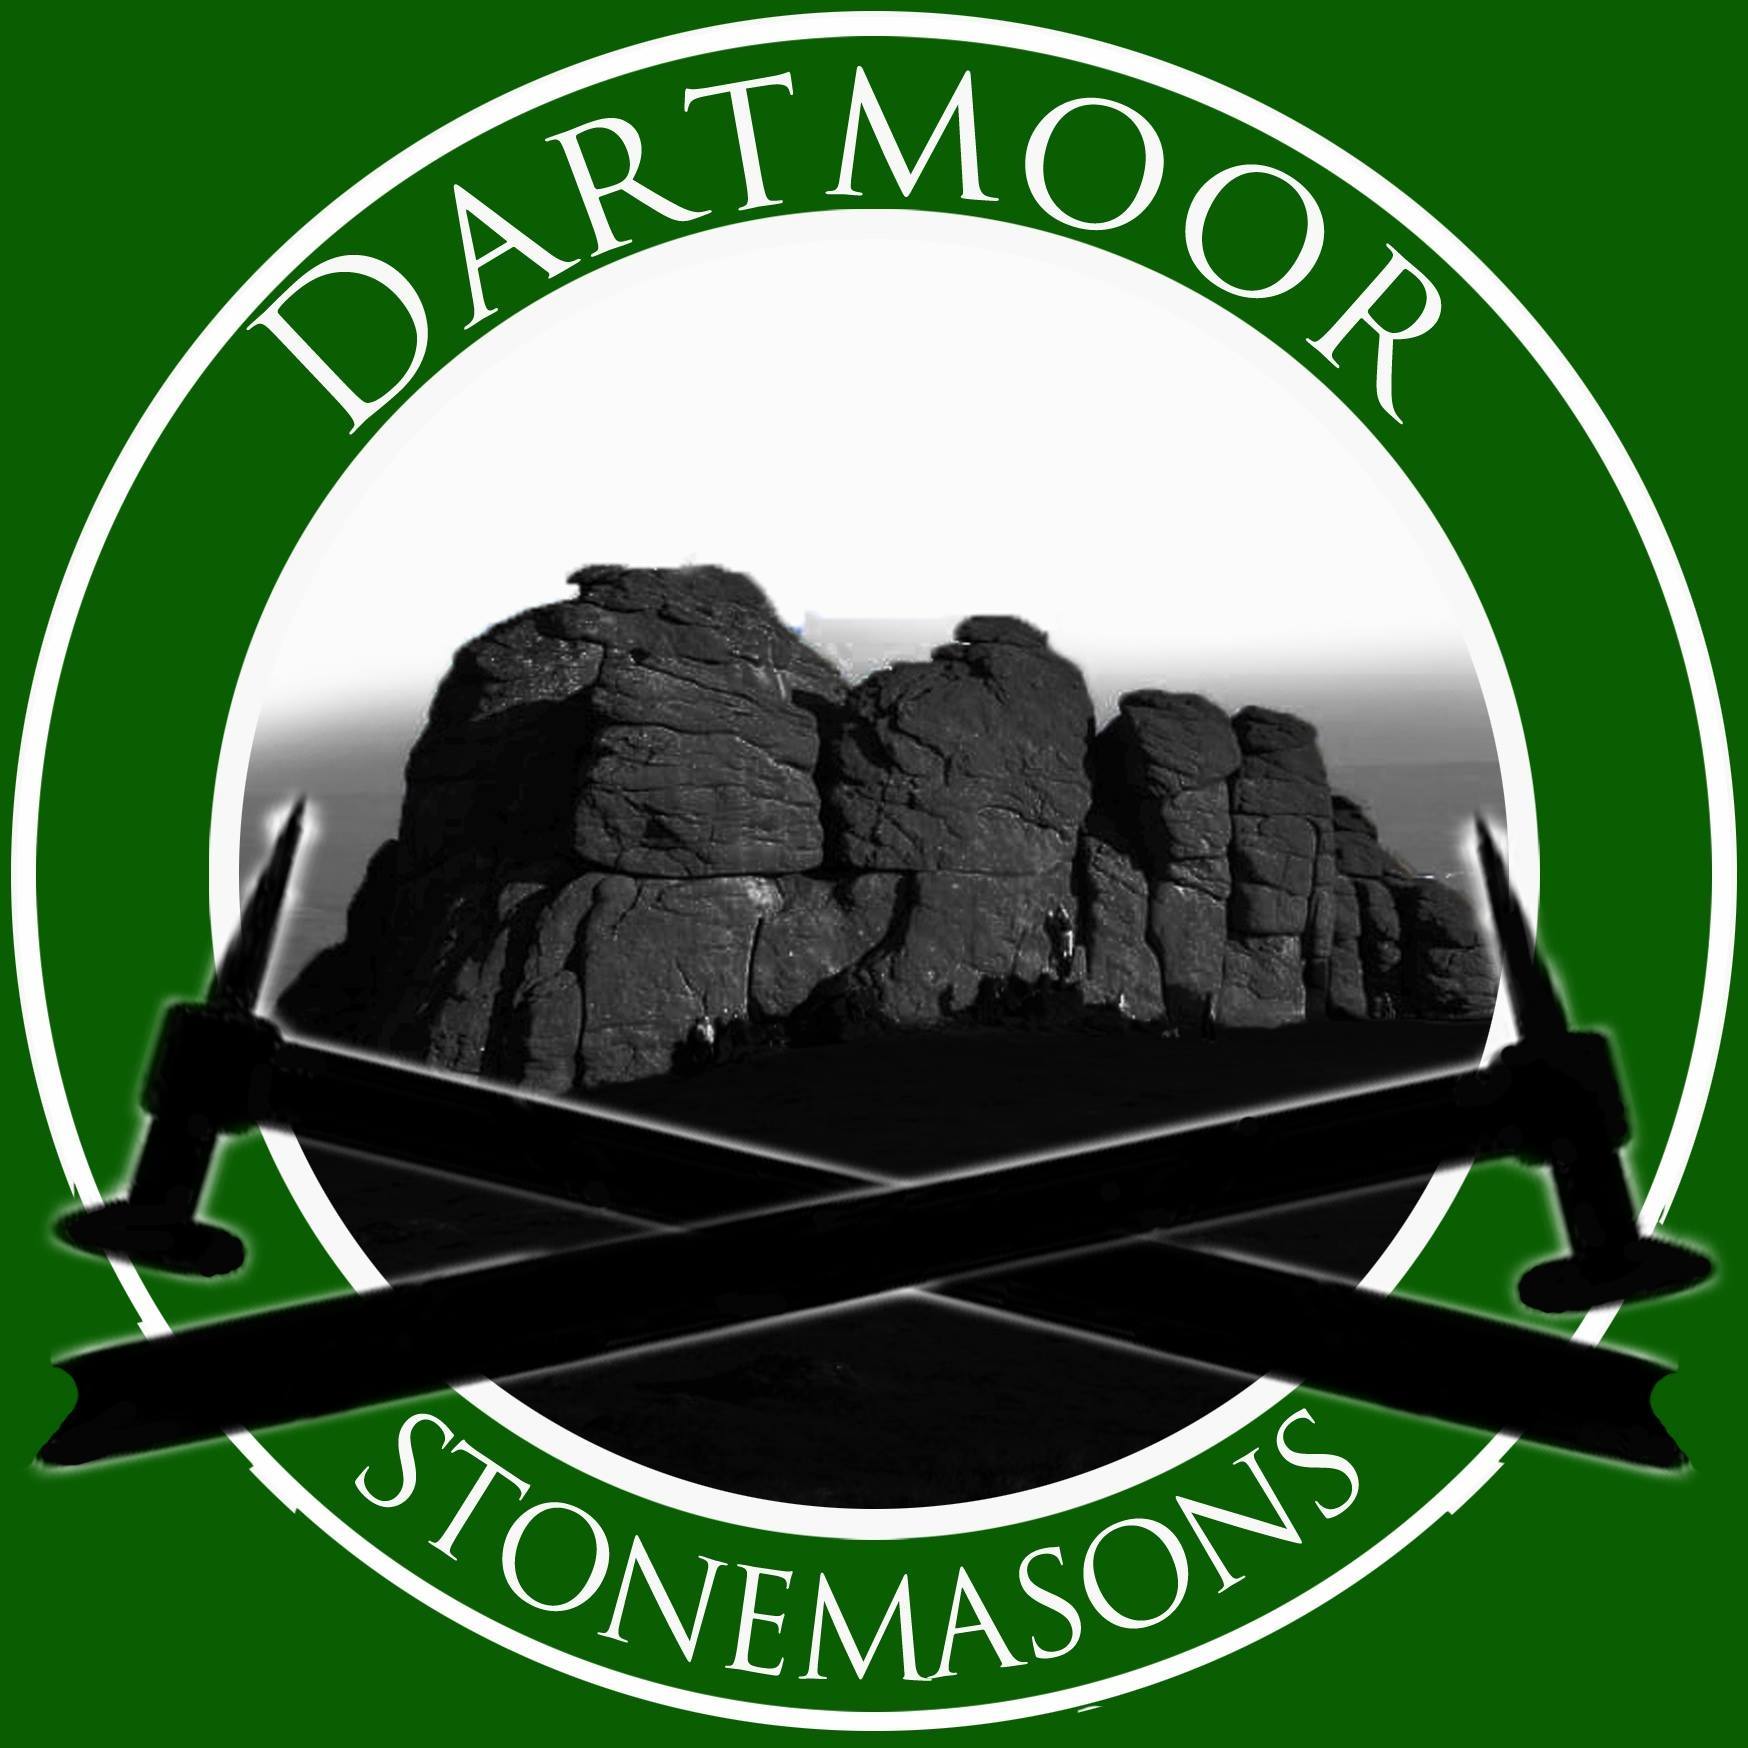 dartmoor stonemasons